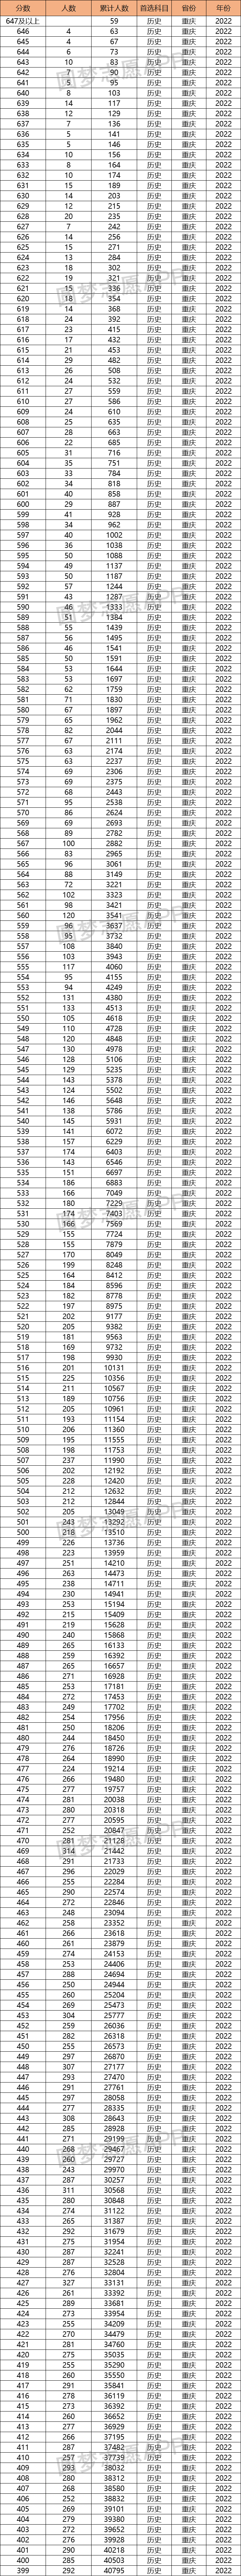 2022重庆高考一分一段排名表物理历史汇总